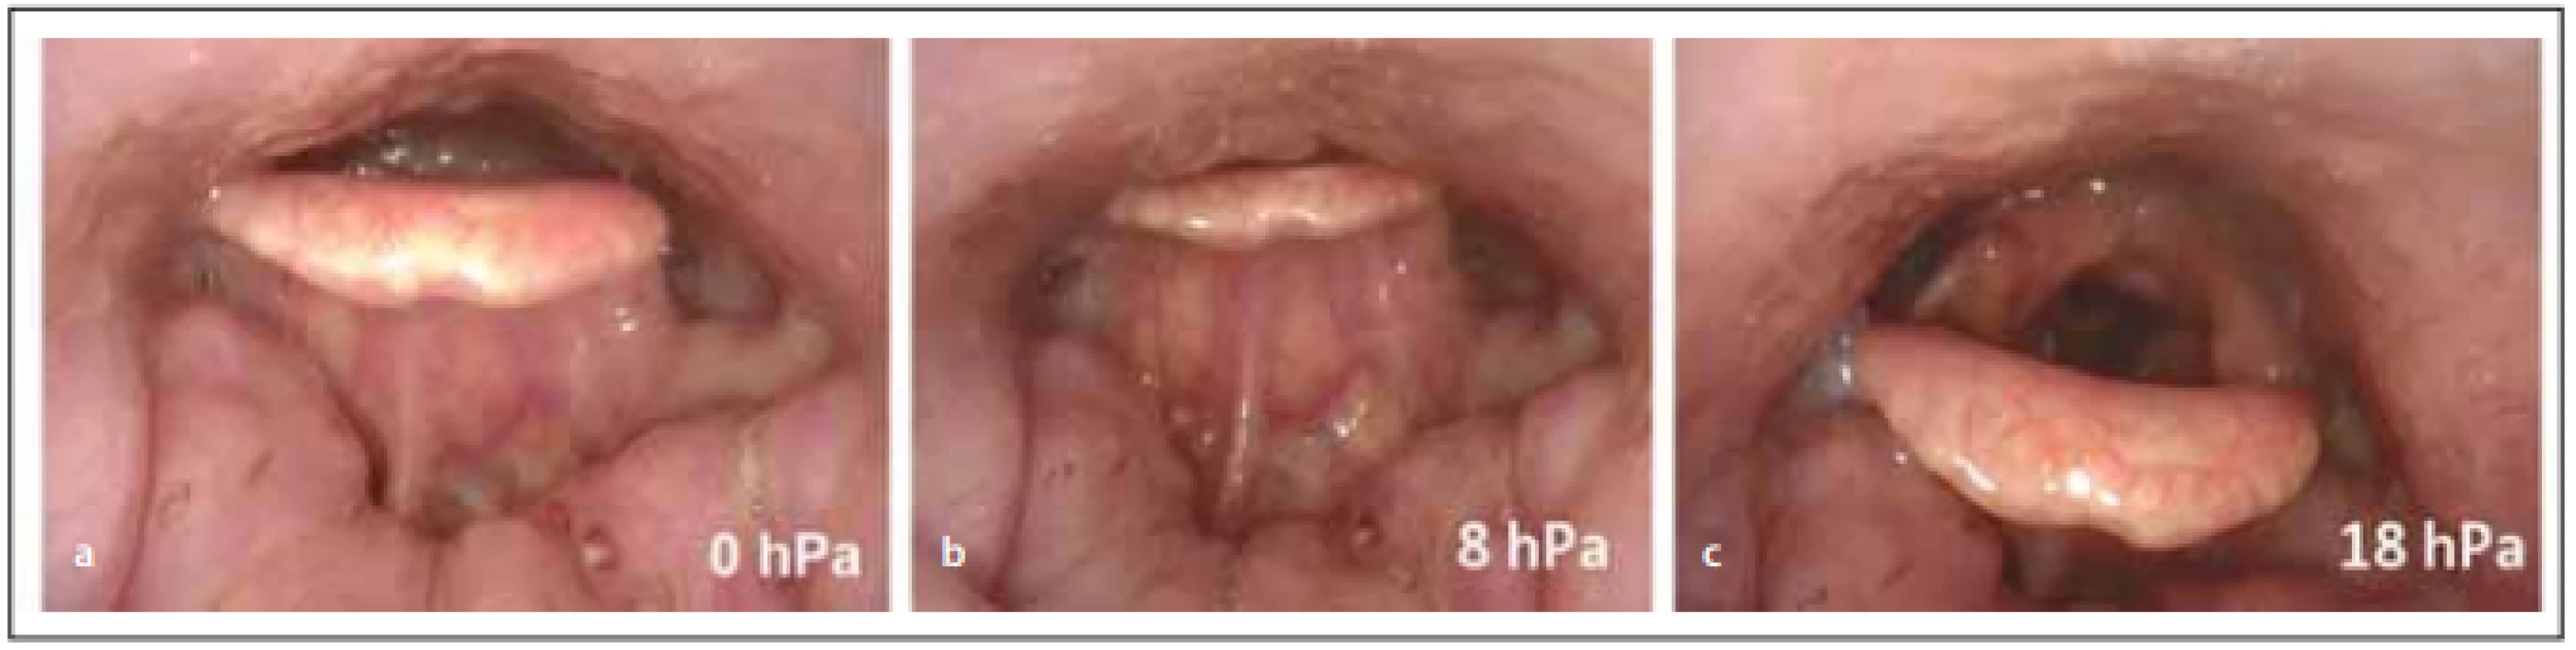 Endoskopie v uměle navozeném spánku s CPAP, pohled do hypofaryngu a na vchod hrtanu fl exibilním endoskopem – (a) 
předo zadní obstrukce v oblasti epiglotis při tlaku 0 hPa; (b) kolaps epiglotis při použití tlaku 8 hPa, selhání CPAP, zhoršení obstrukce; (c) 
oddálení epiglotis od zadní stěny hltanu až při tlaku 18 hPa. <br>
Fig. 1. Drug-induced sleep endoscopy and CPAP, view of the hypopharynx and the entrance of the larynx with a fl exible endoscope – 
(a) the anterior-posterior obstruction of epiglottis at a pressure of 0 hPa; (b) collapse of the epiglottis at a pressure of 8 hPa, CPAP 
failure, worsening of obstruction; (c) removal of epiglottis from the posterior wall of the pharynx beyond the pressure of 18 hPa.